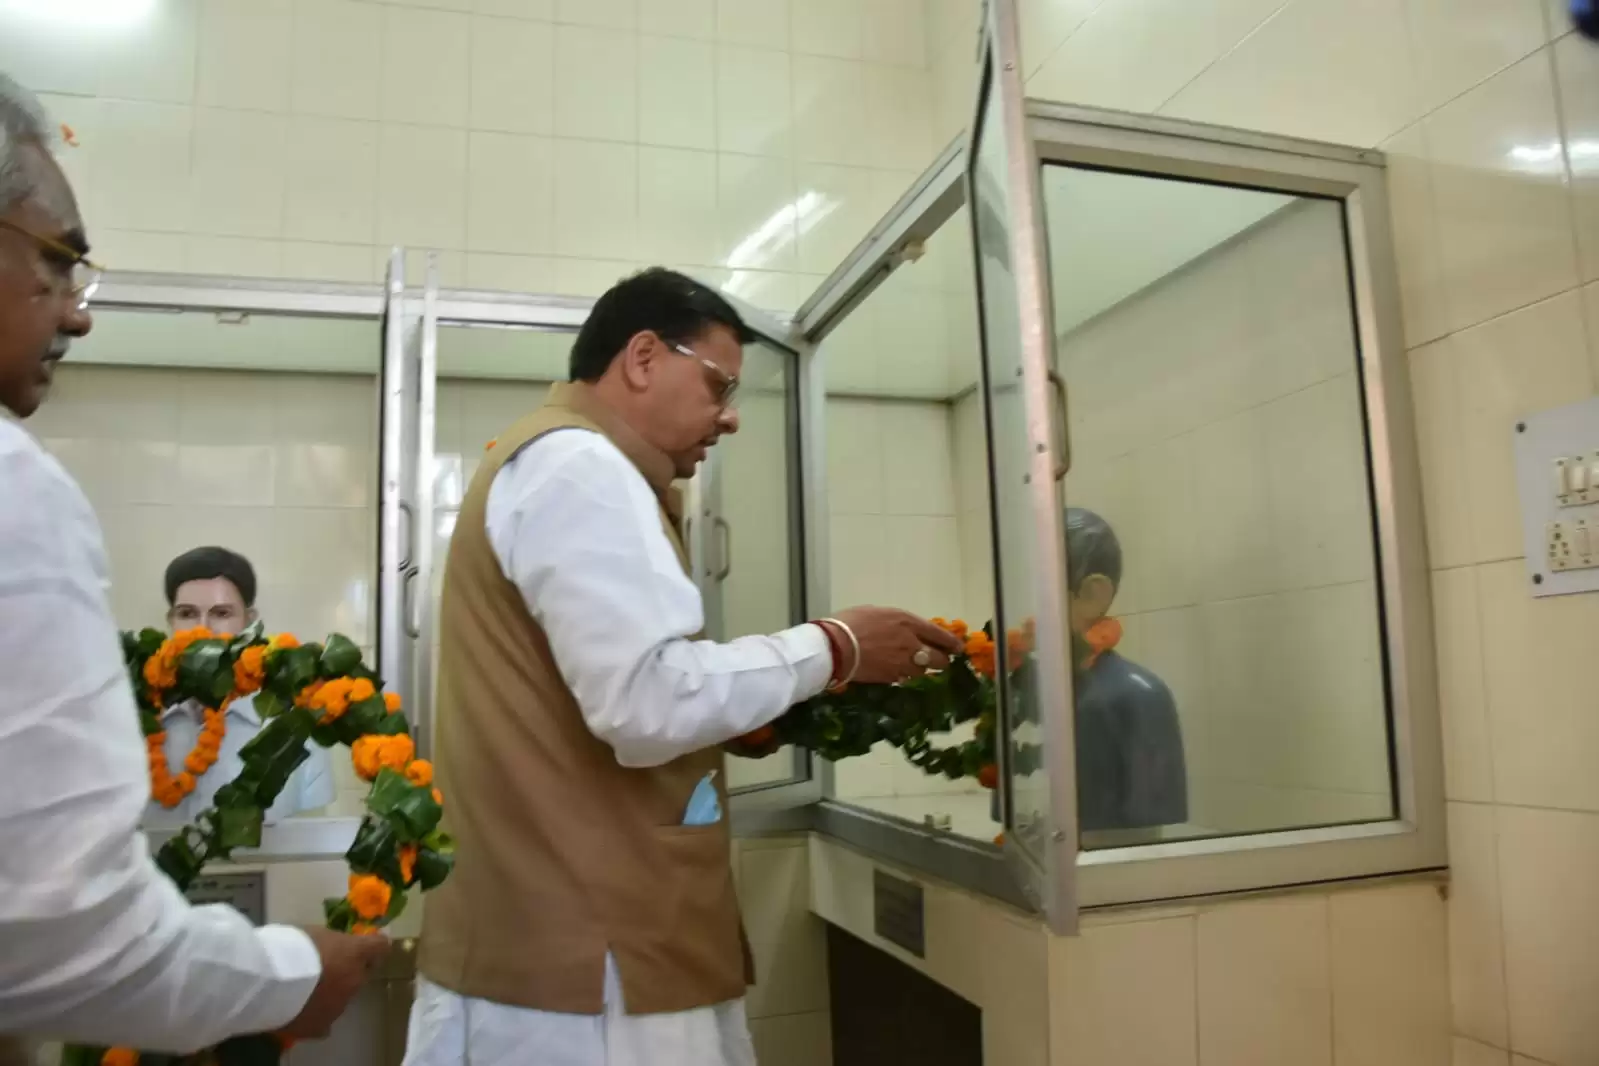 CM पुष्कर सिंह धामी ने शहीद स्मारक पर पुष्पांजलि अर्पित कर शहीद राज्य आंदोलनकारियों को दी श्रद्धांजलि